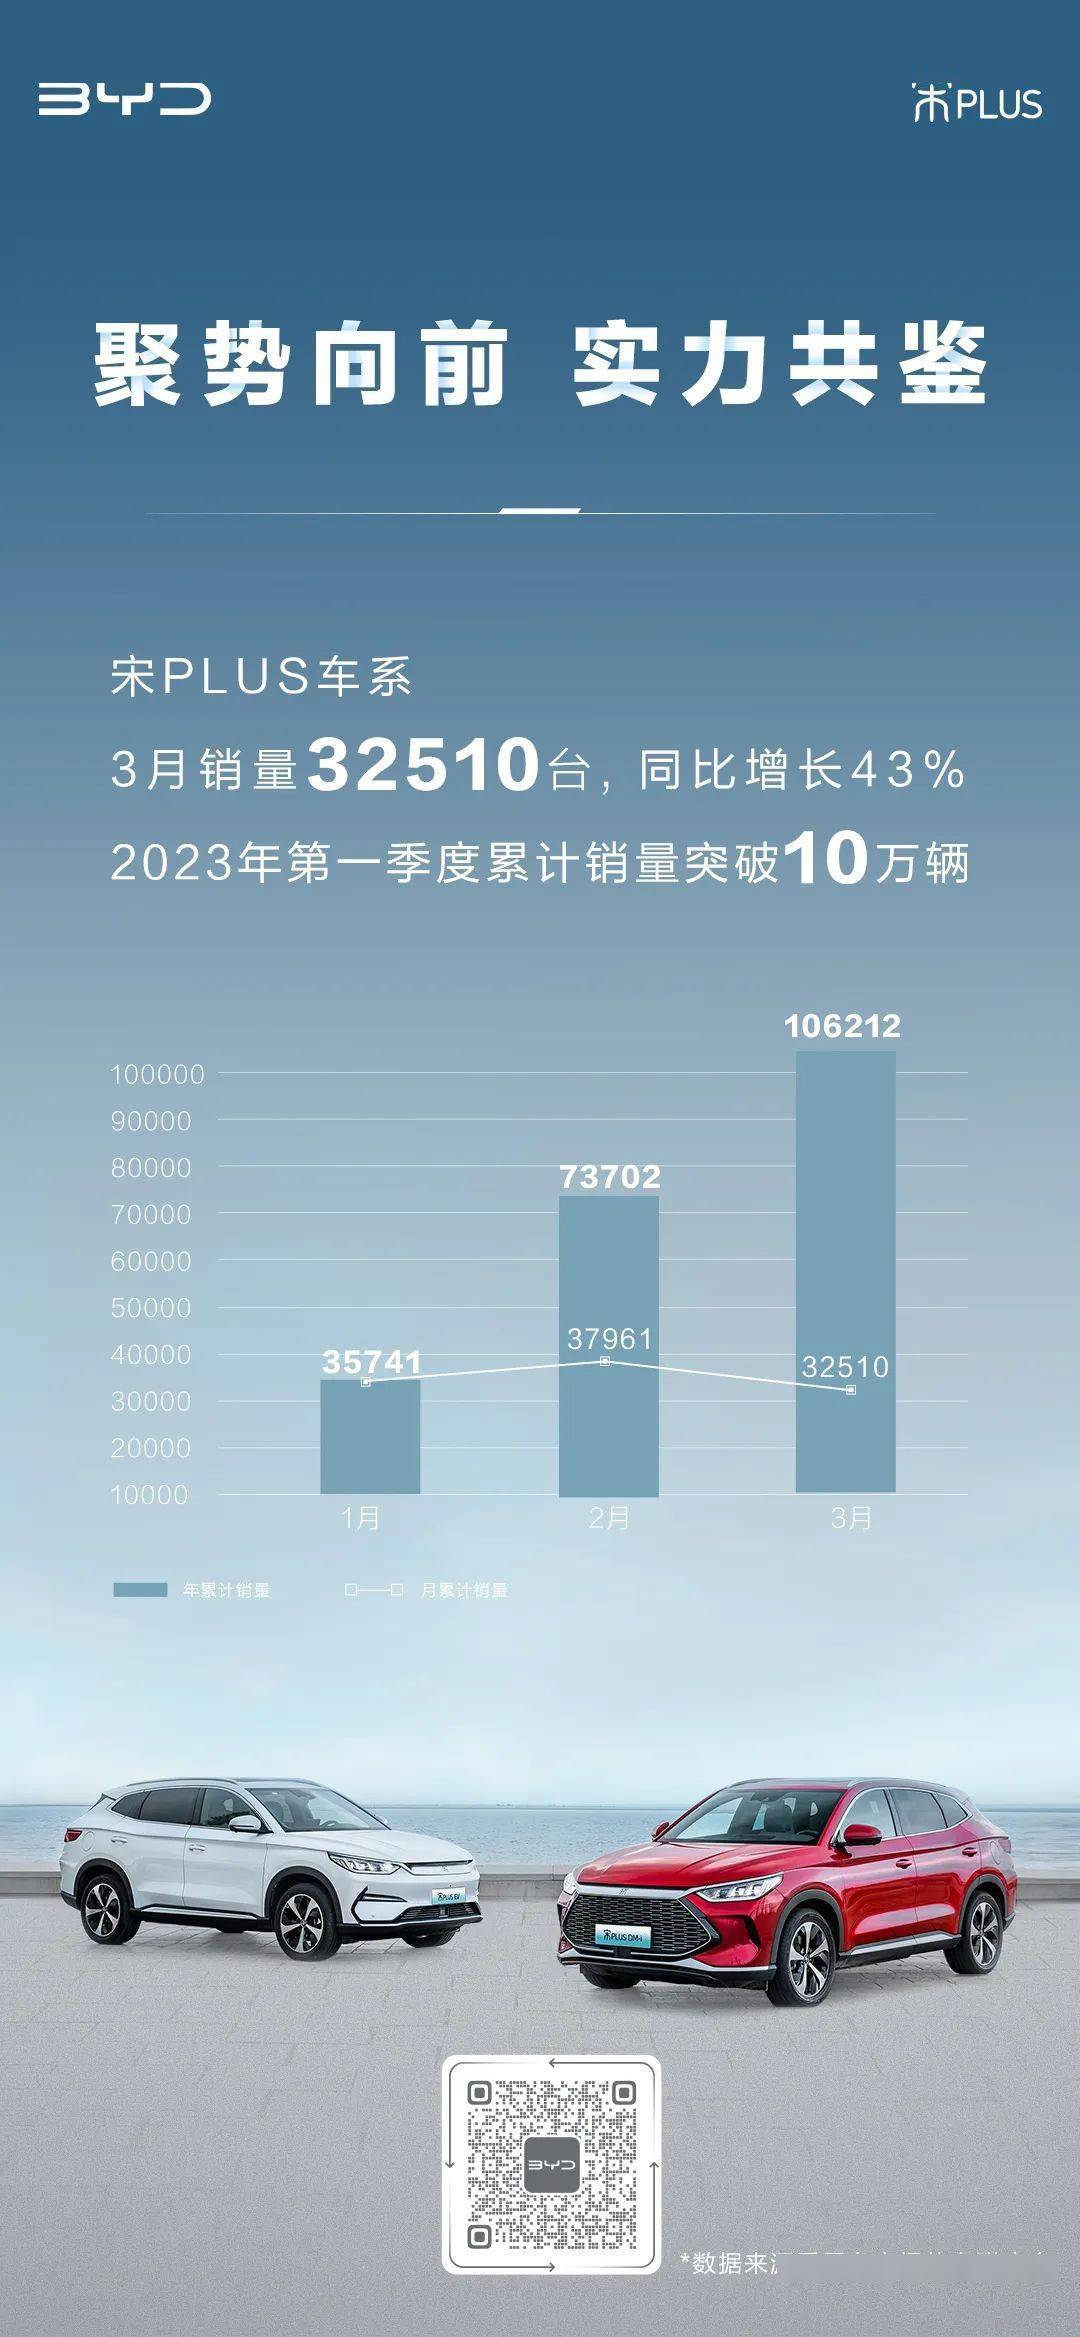 比亚迪宋PLUS车系3月销量32510台 今年第一季度累计销量破10万辆